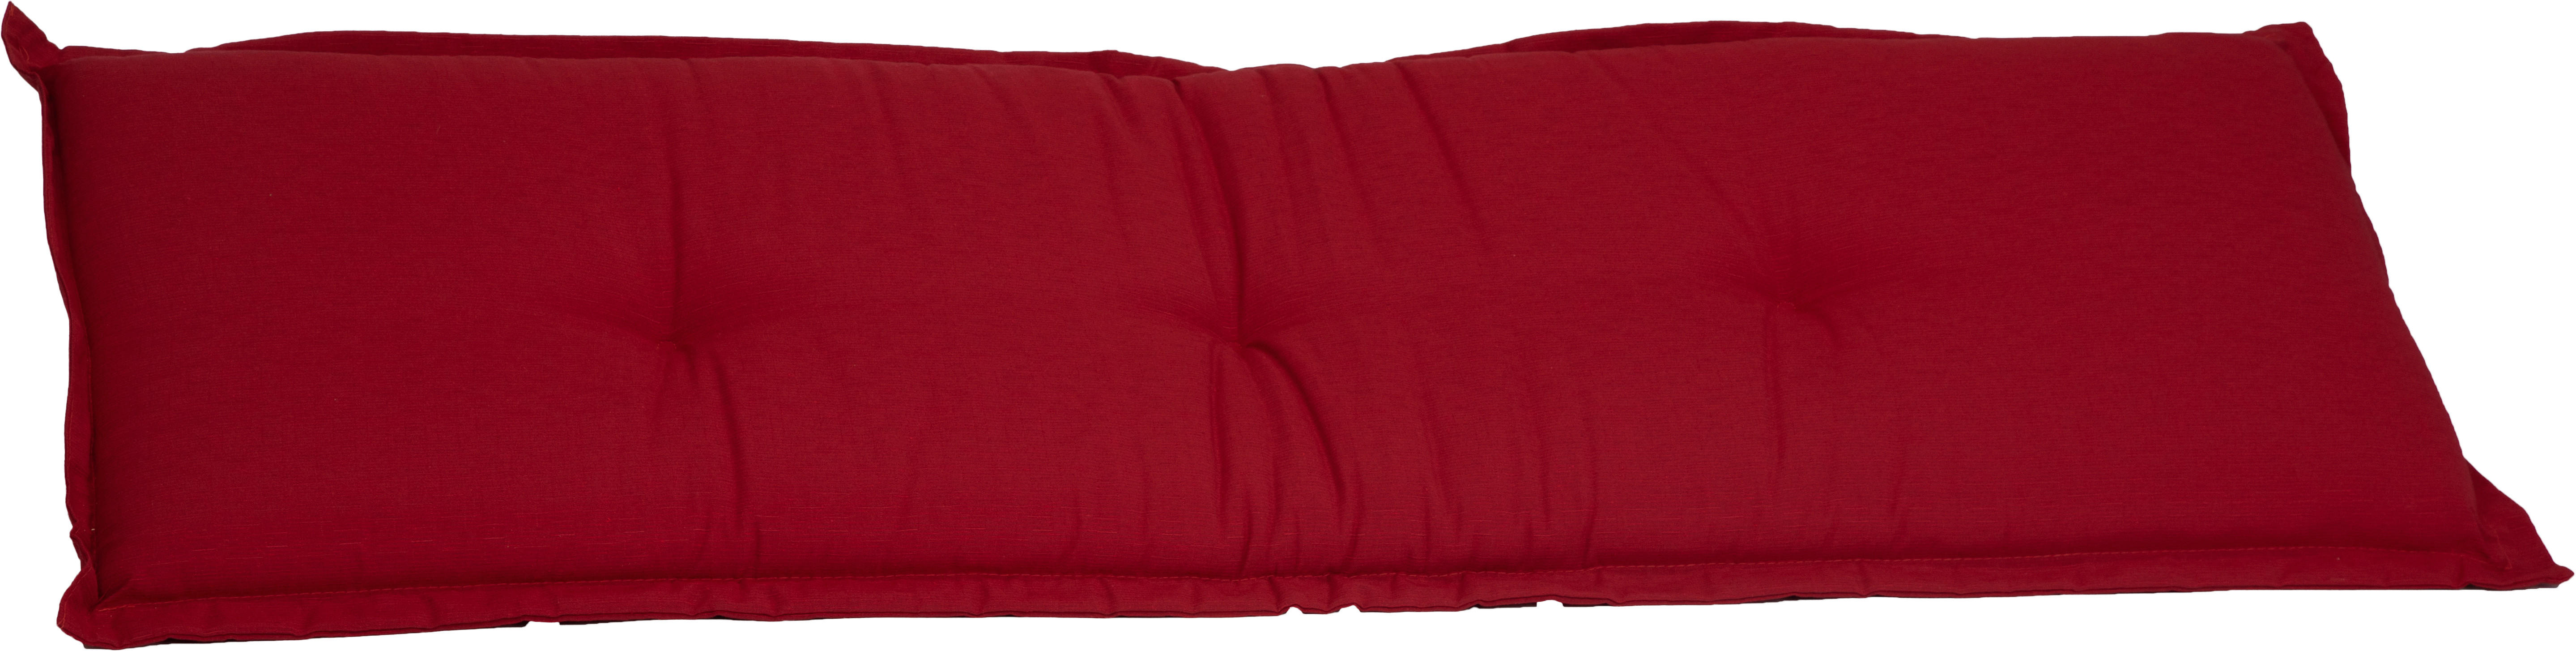 BANKAUFLAGE  meliert  - Rot, Basics, Textil (145/45/7cm)